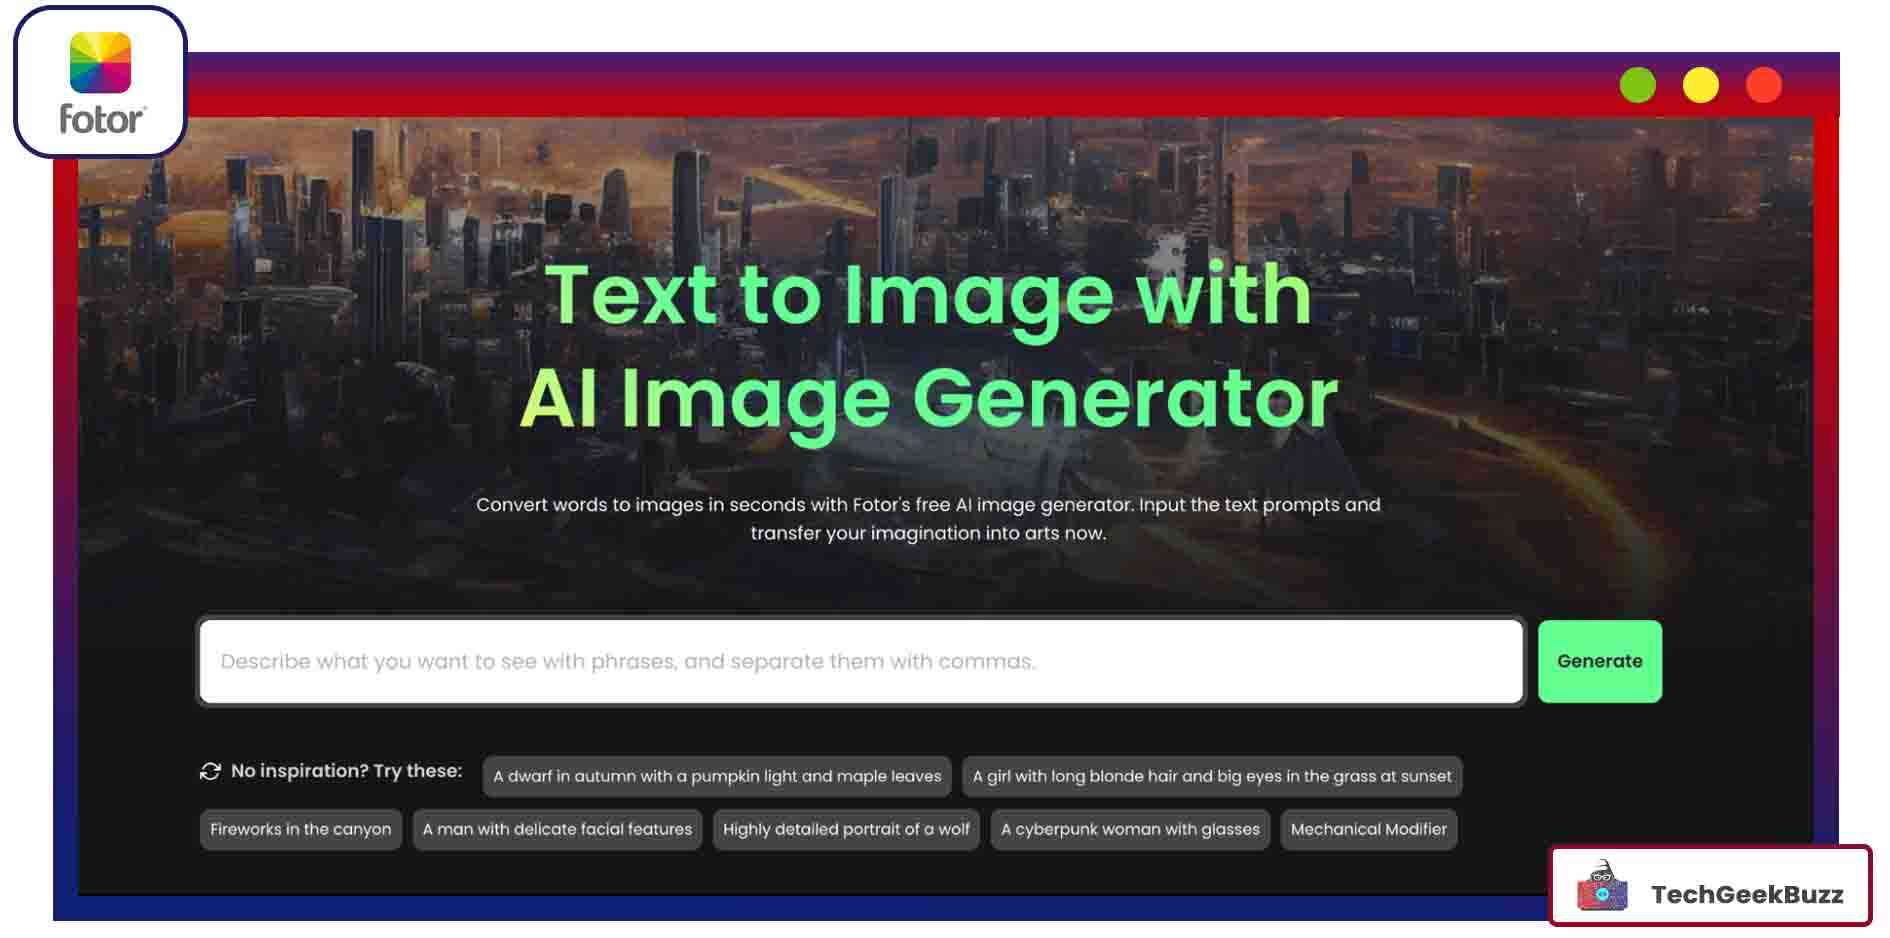 Fotor AI Image Generator